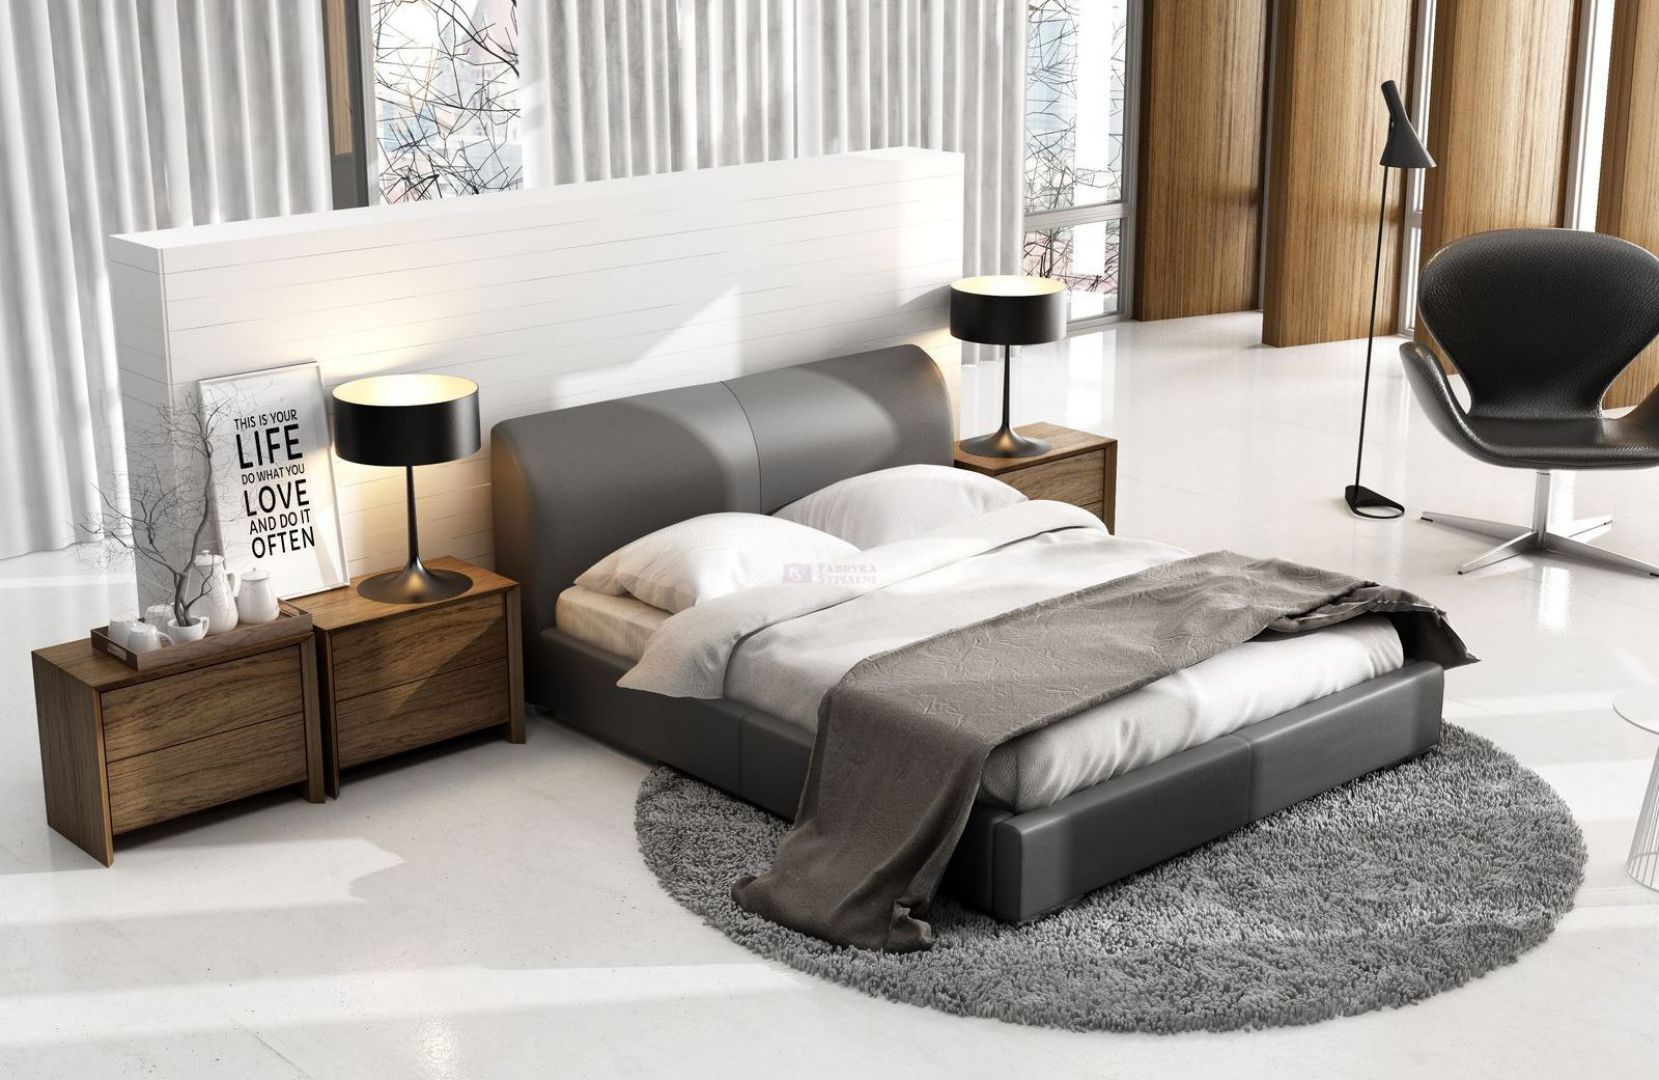 Łóżko Classic Lux z zagłówkiem dość okazałym w wyglądzie. Sprawia, że surowa stylizacja staje się przytulna i ciepła. Fot. New Design